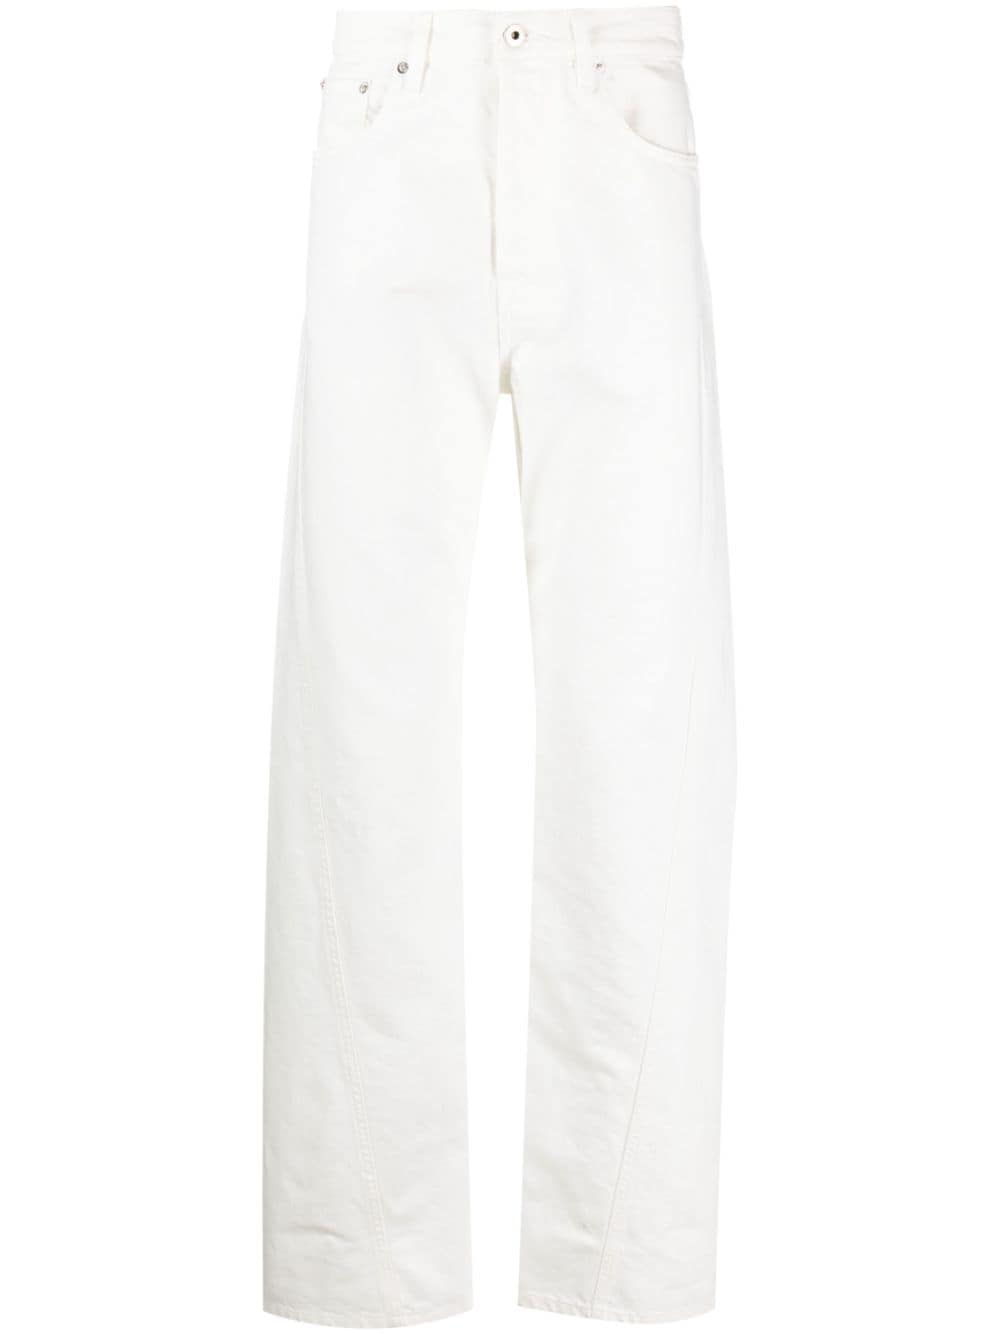 Lanvin Optical White Cotton Denim Twist Detailing Men's Jeans